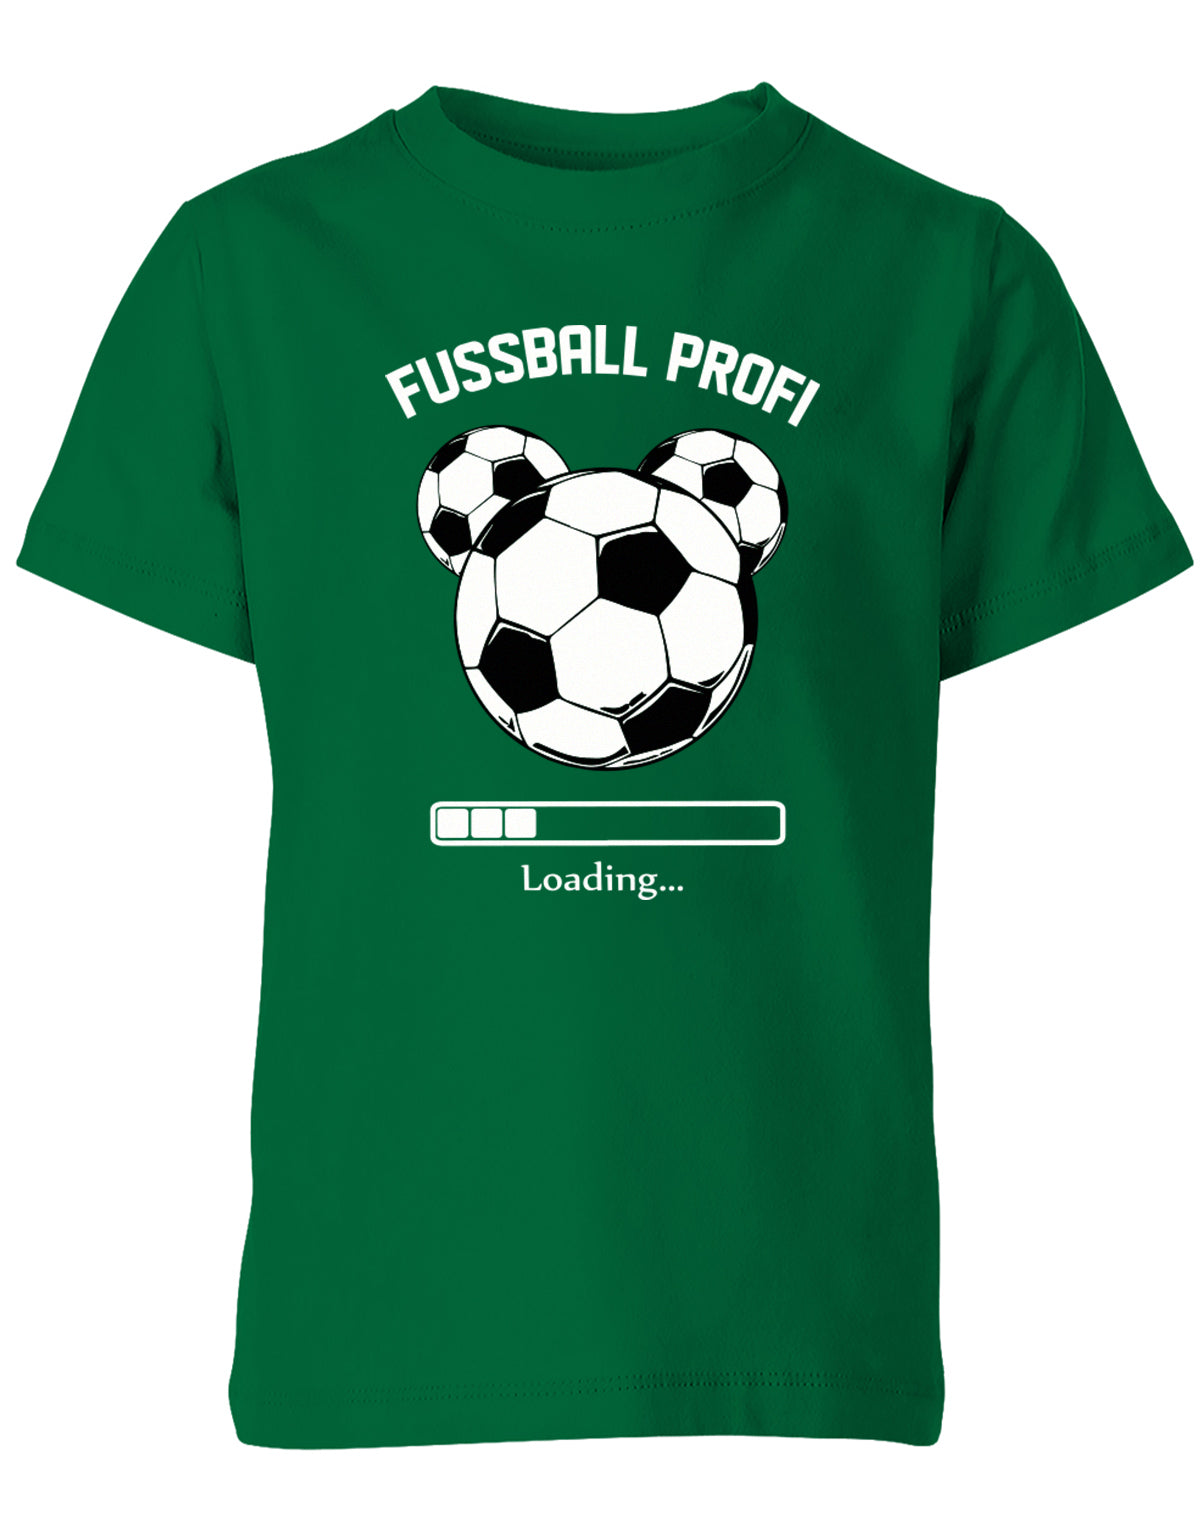 Fussball-Profi-Kinder-Shirt-Gruen